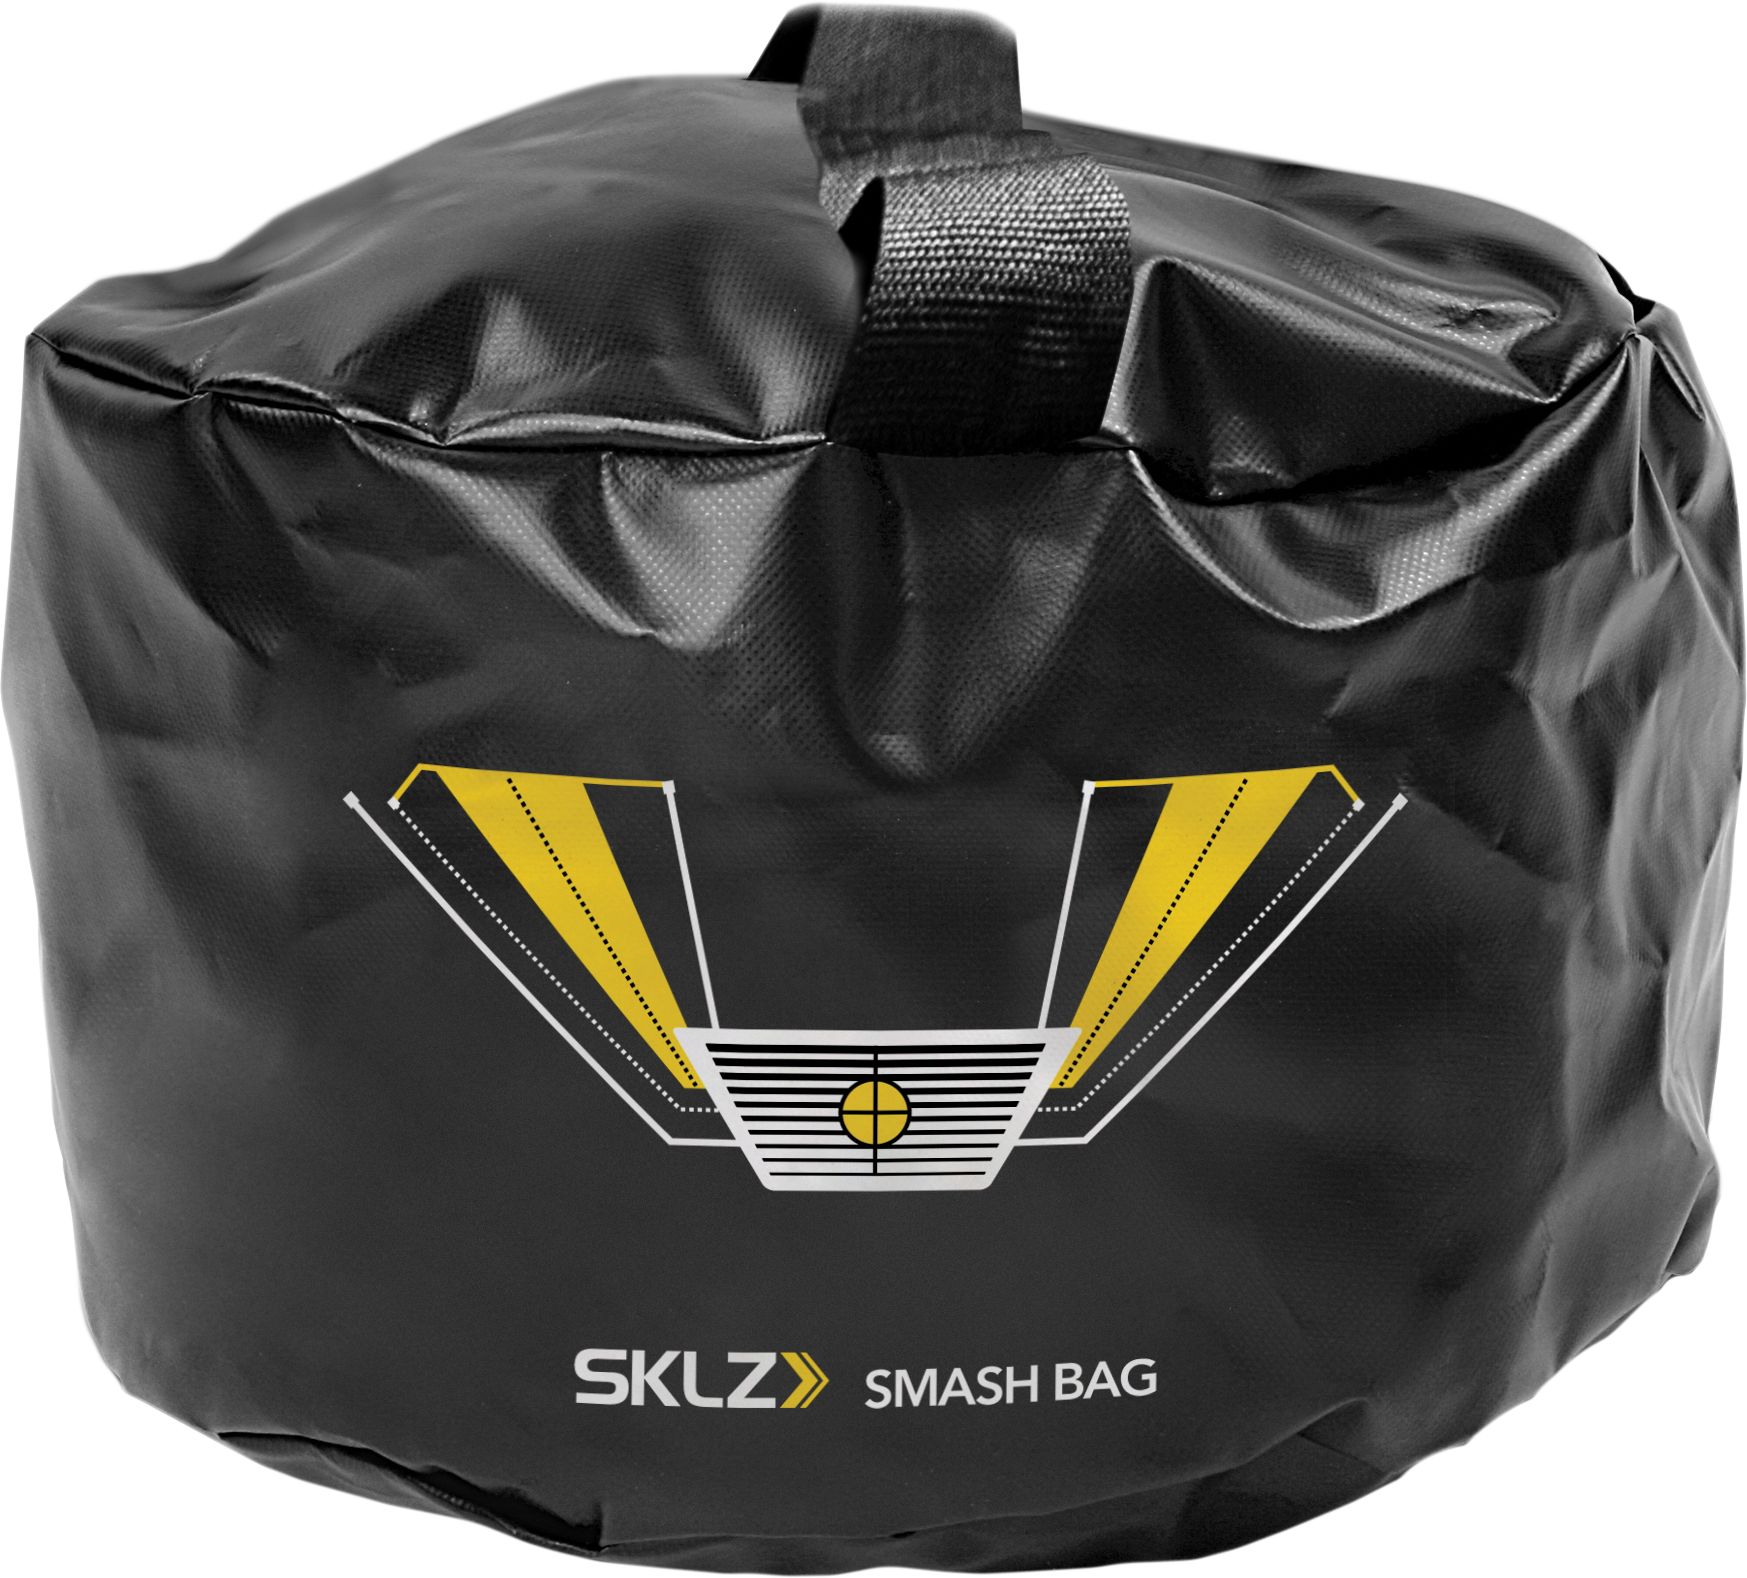 Image of Sklz Smash Bag